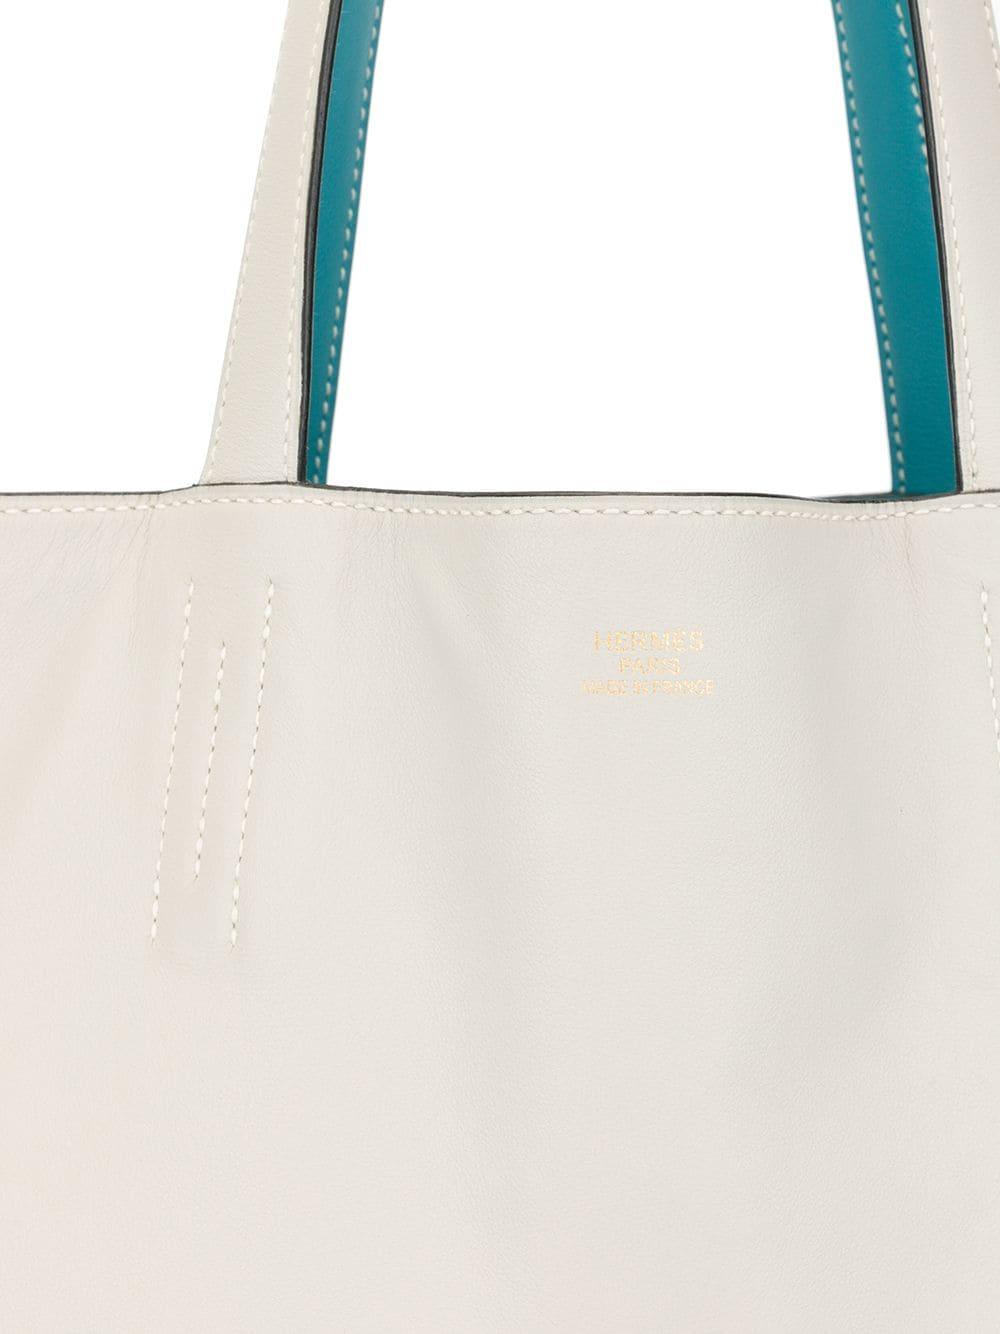 Hermès Double Sens Leather Tote Bag